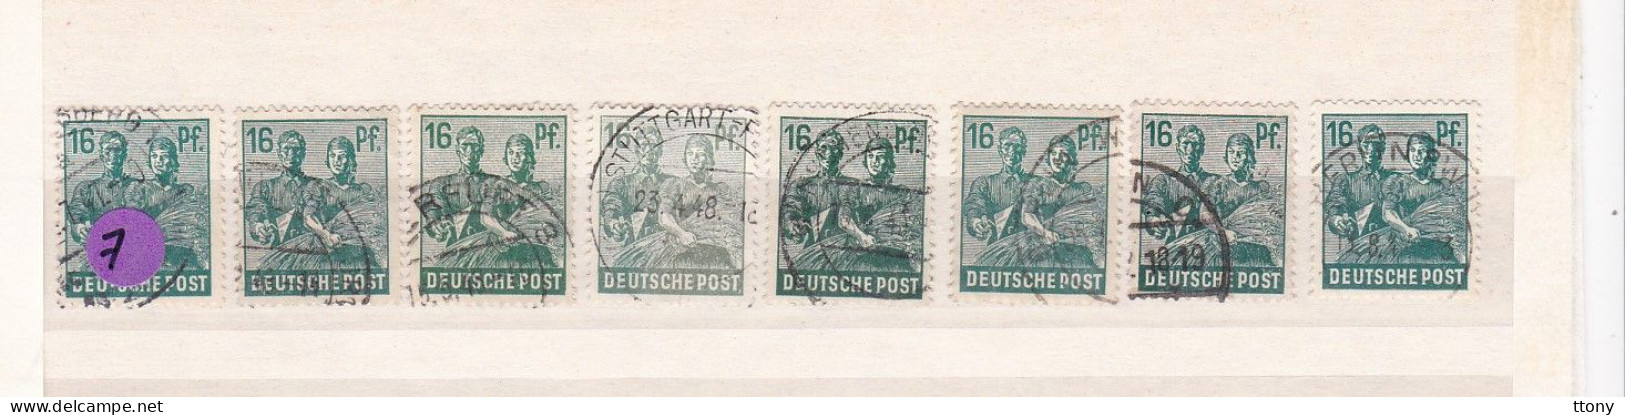 Un Lot De 8  Timbres Oblitérés  16 Pfennig  Deutsche Post Allemagne  N° 38  Occupation Alliée   Zone Interalliée AAS - Afgestempeld